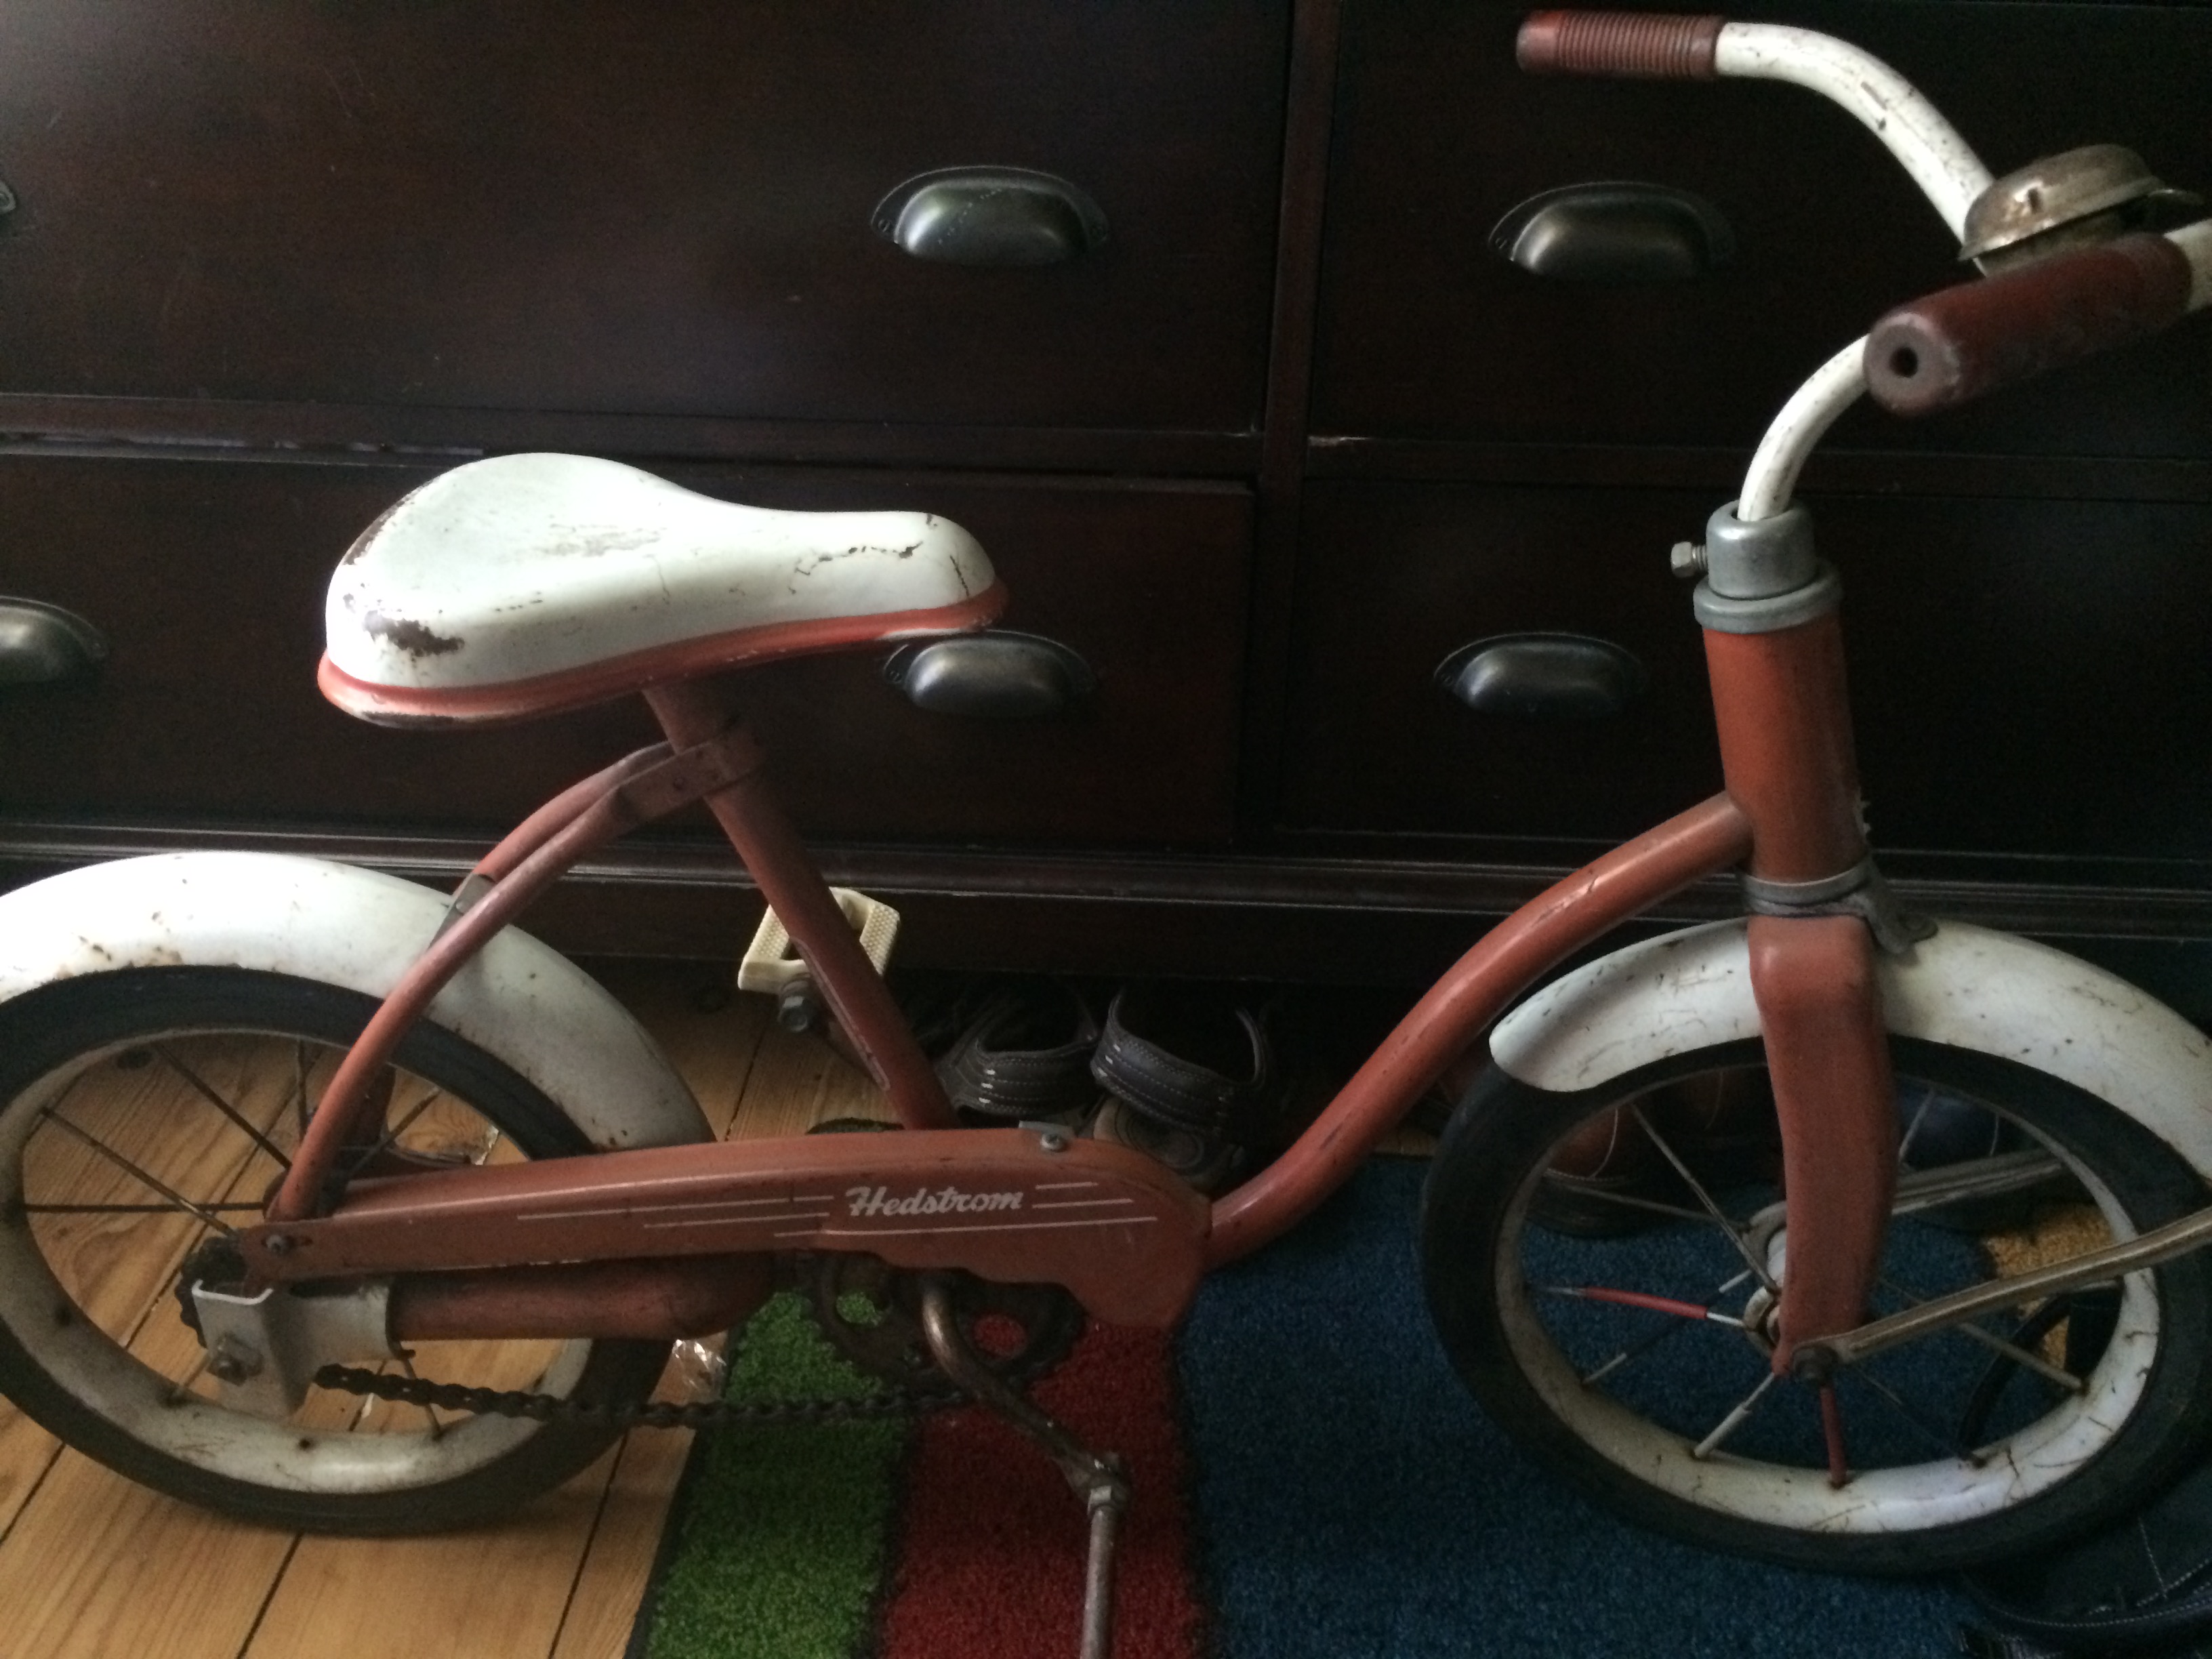 Hedstrom kids bike | Antiques Board